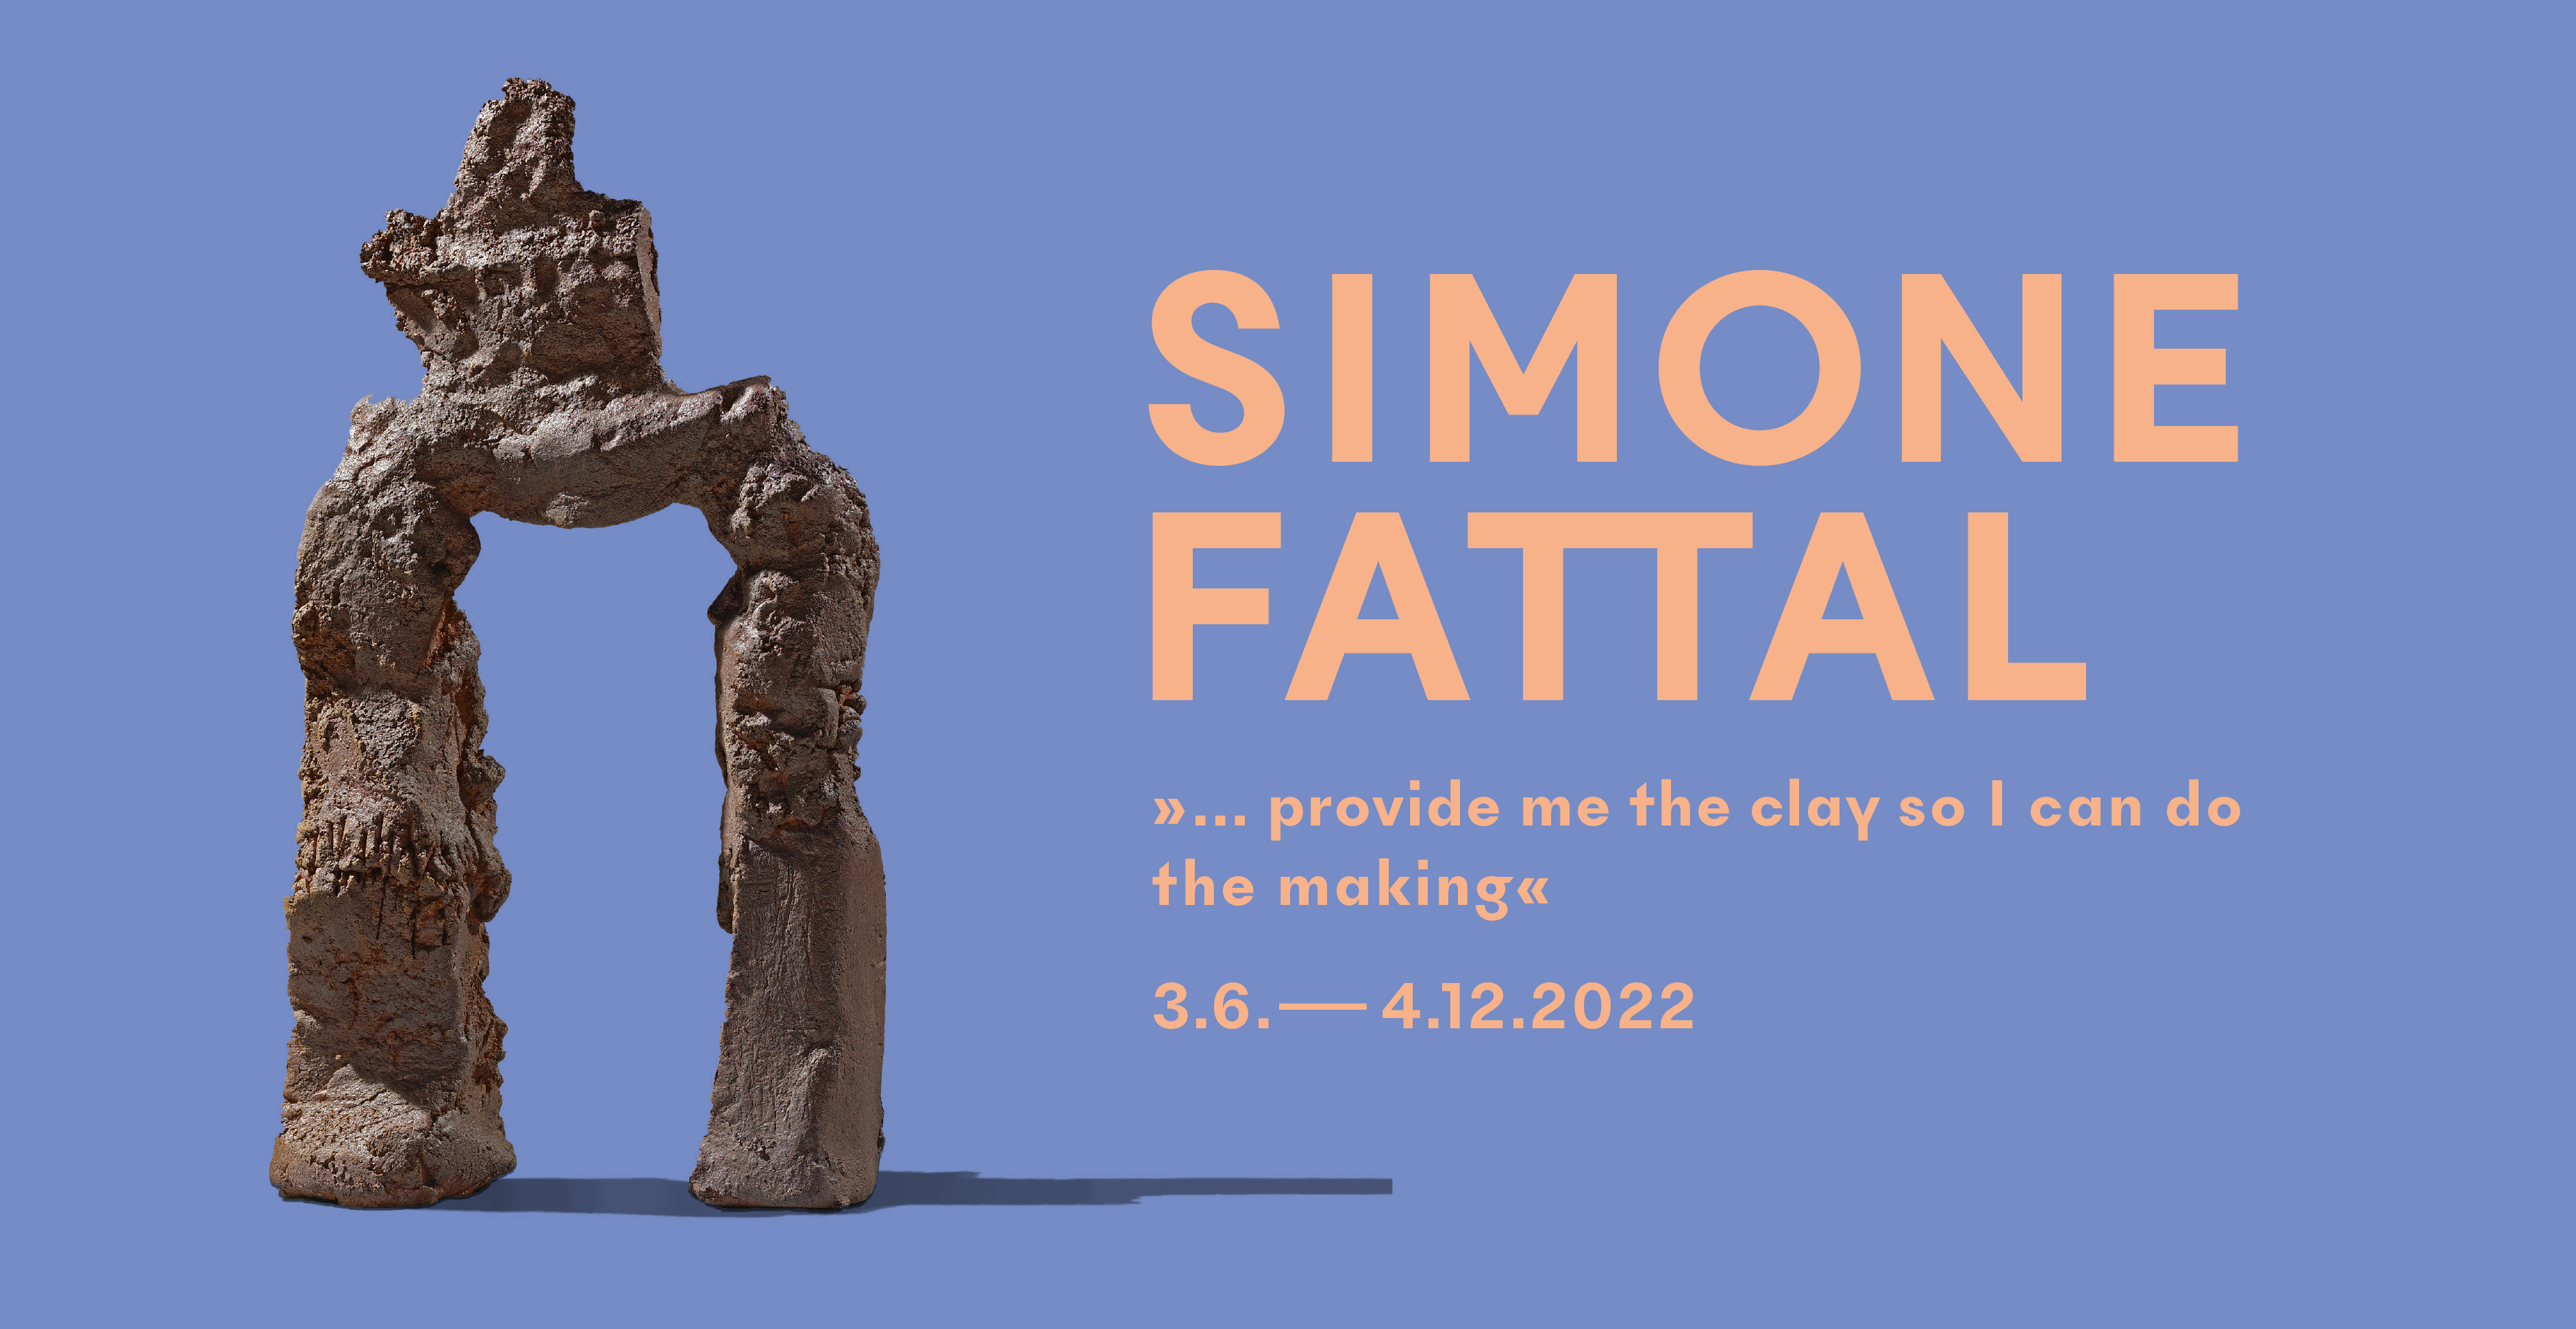 Grafik zur Ausstellung Simone Fattal mit einem Objekt, Titel, Untertitel der Ausstellung und Laufzeit.